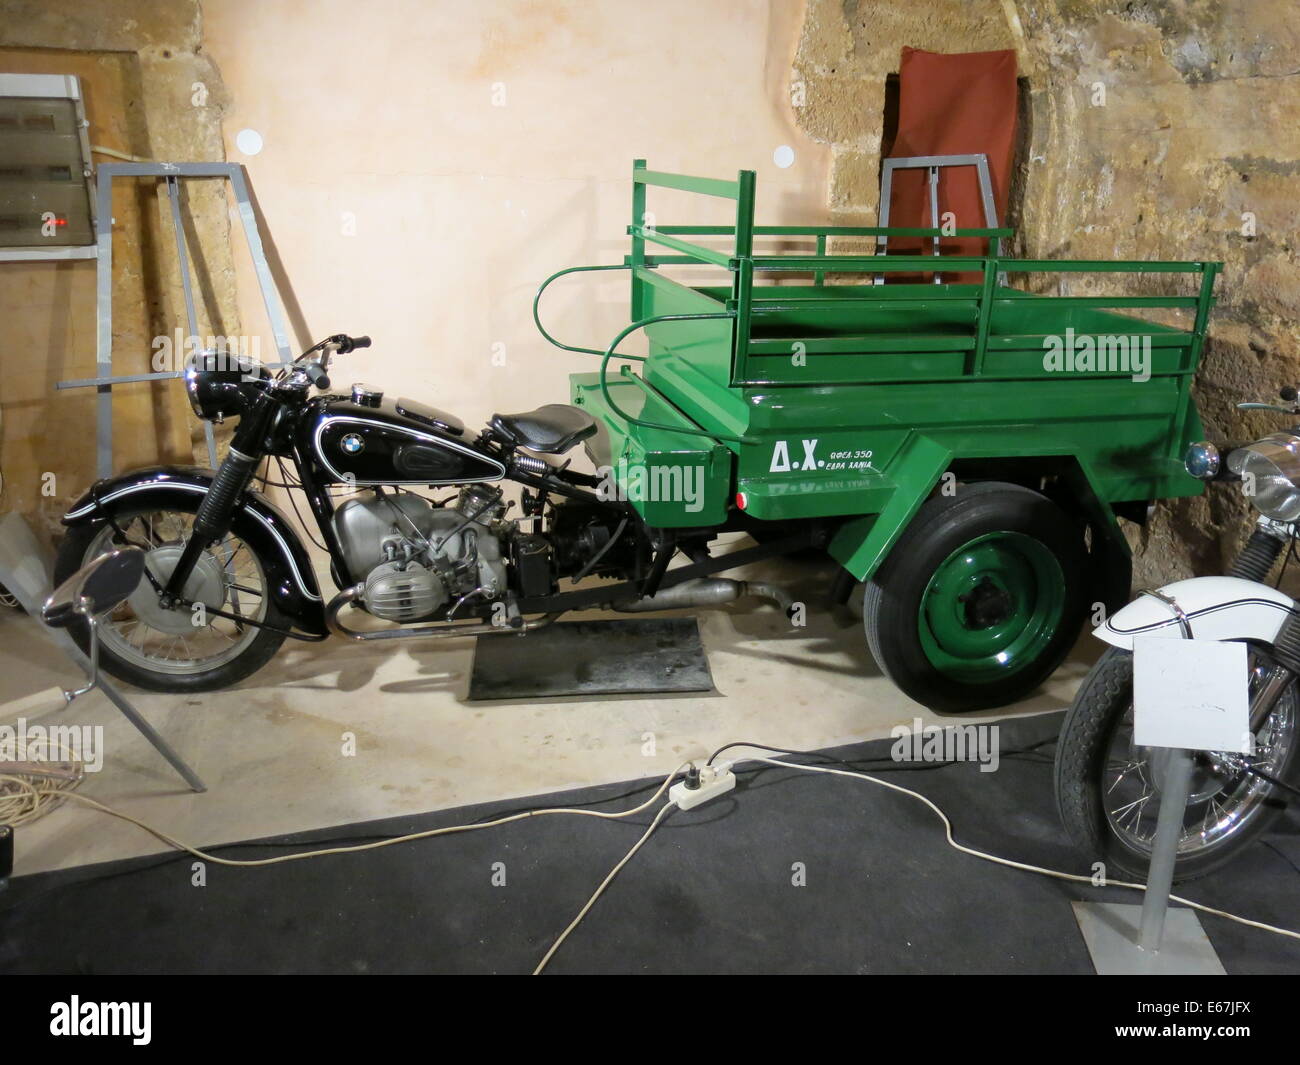 Bild des alten BMW-Motorrades, das auf der 9. Ausstellung der klassischen Motorräder in Chania, Crete, Griechenland, in ein Dreirad umgebaut wurde. Stockfoto